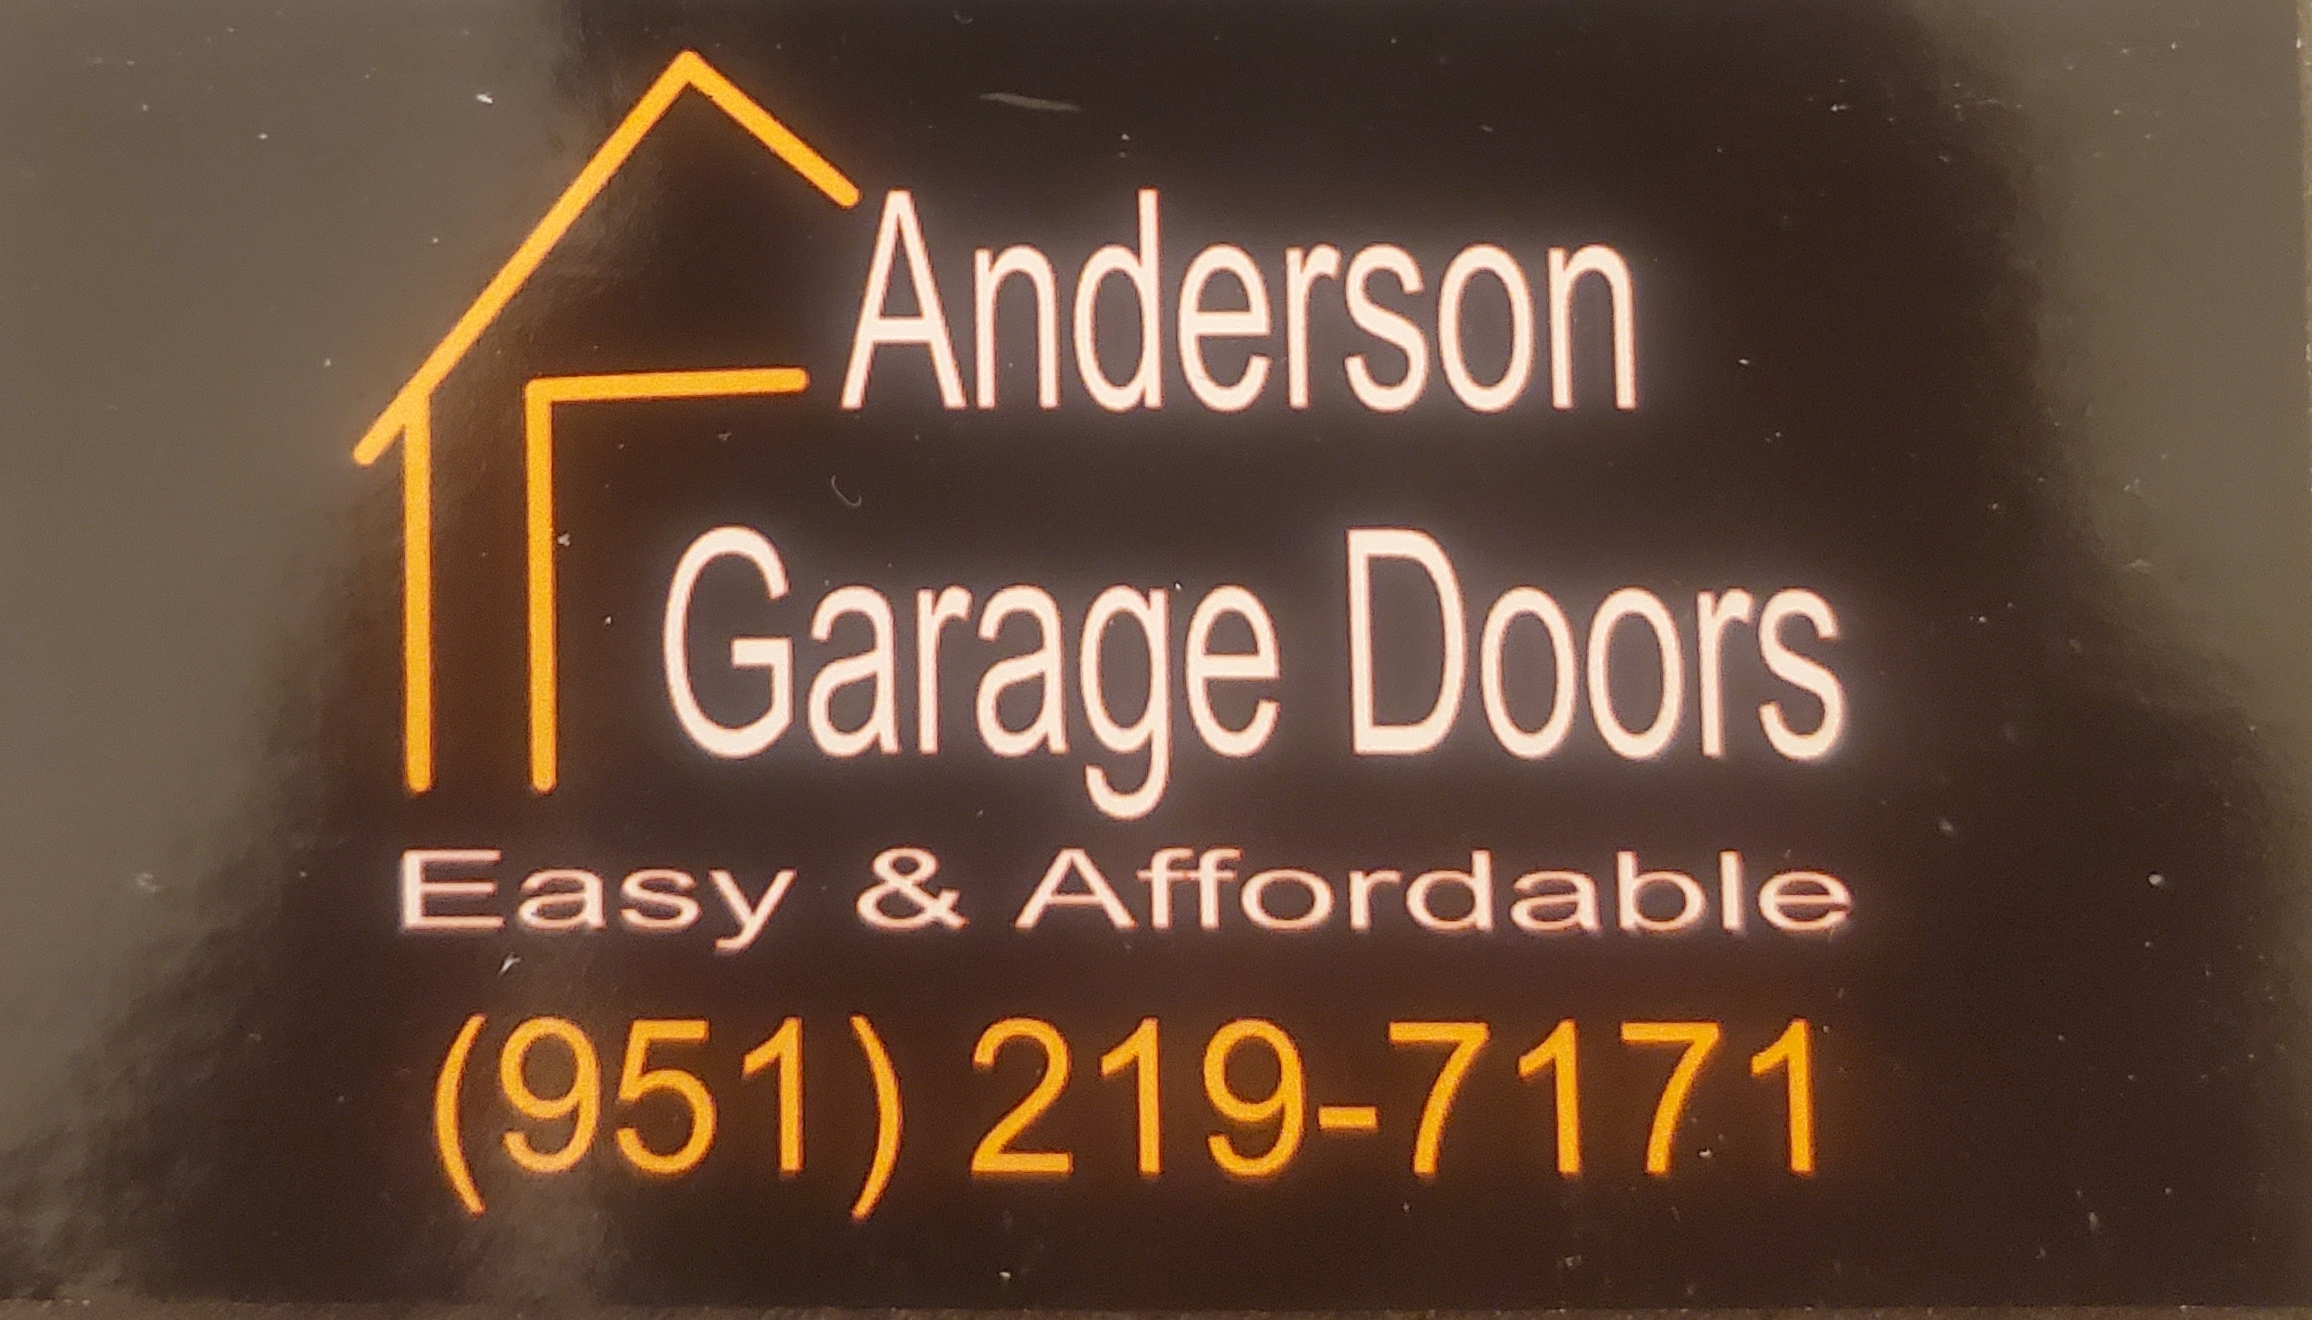 Anderson Garage Doors Logo